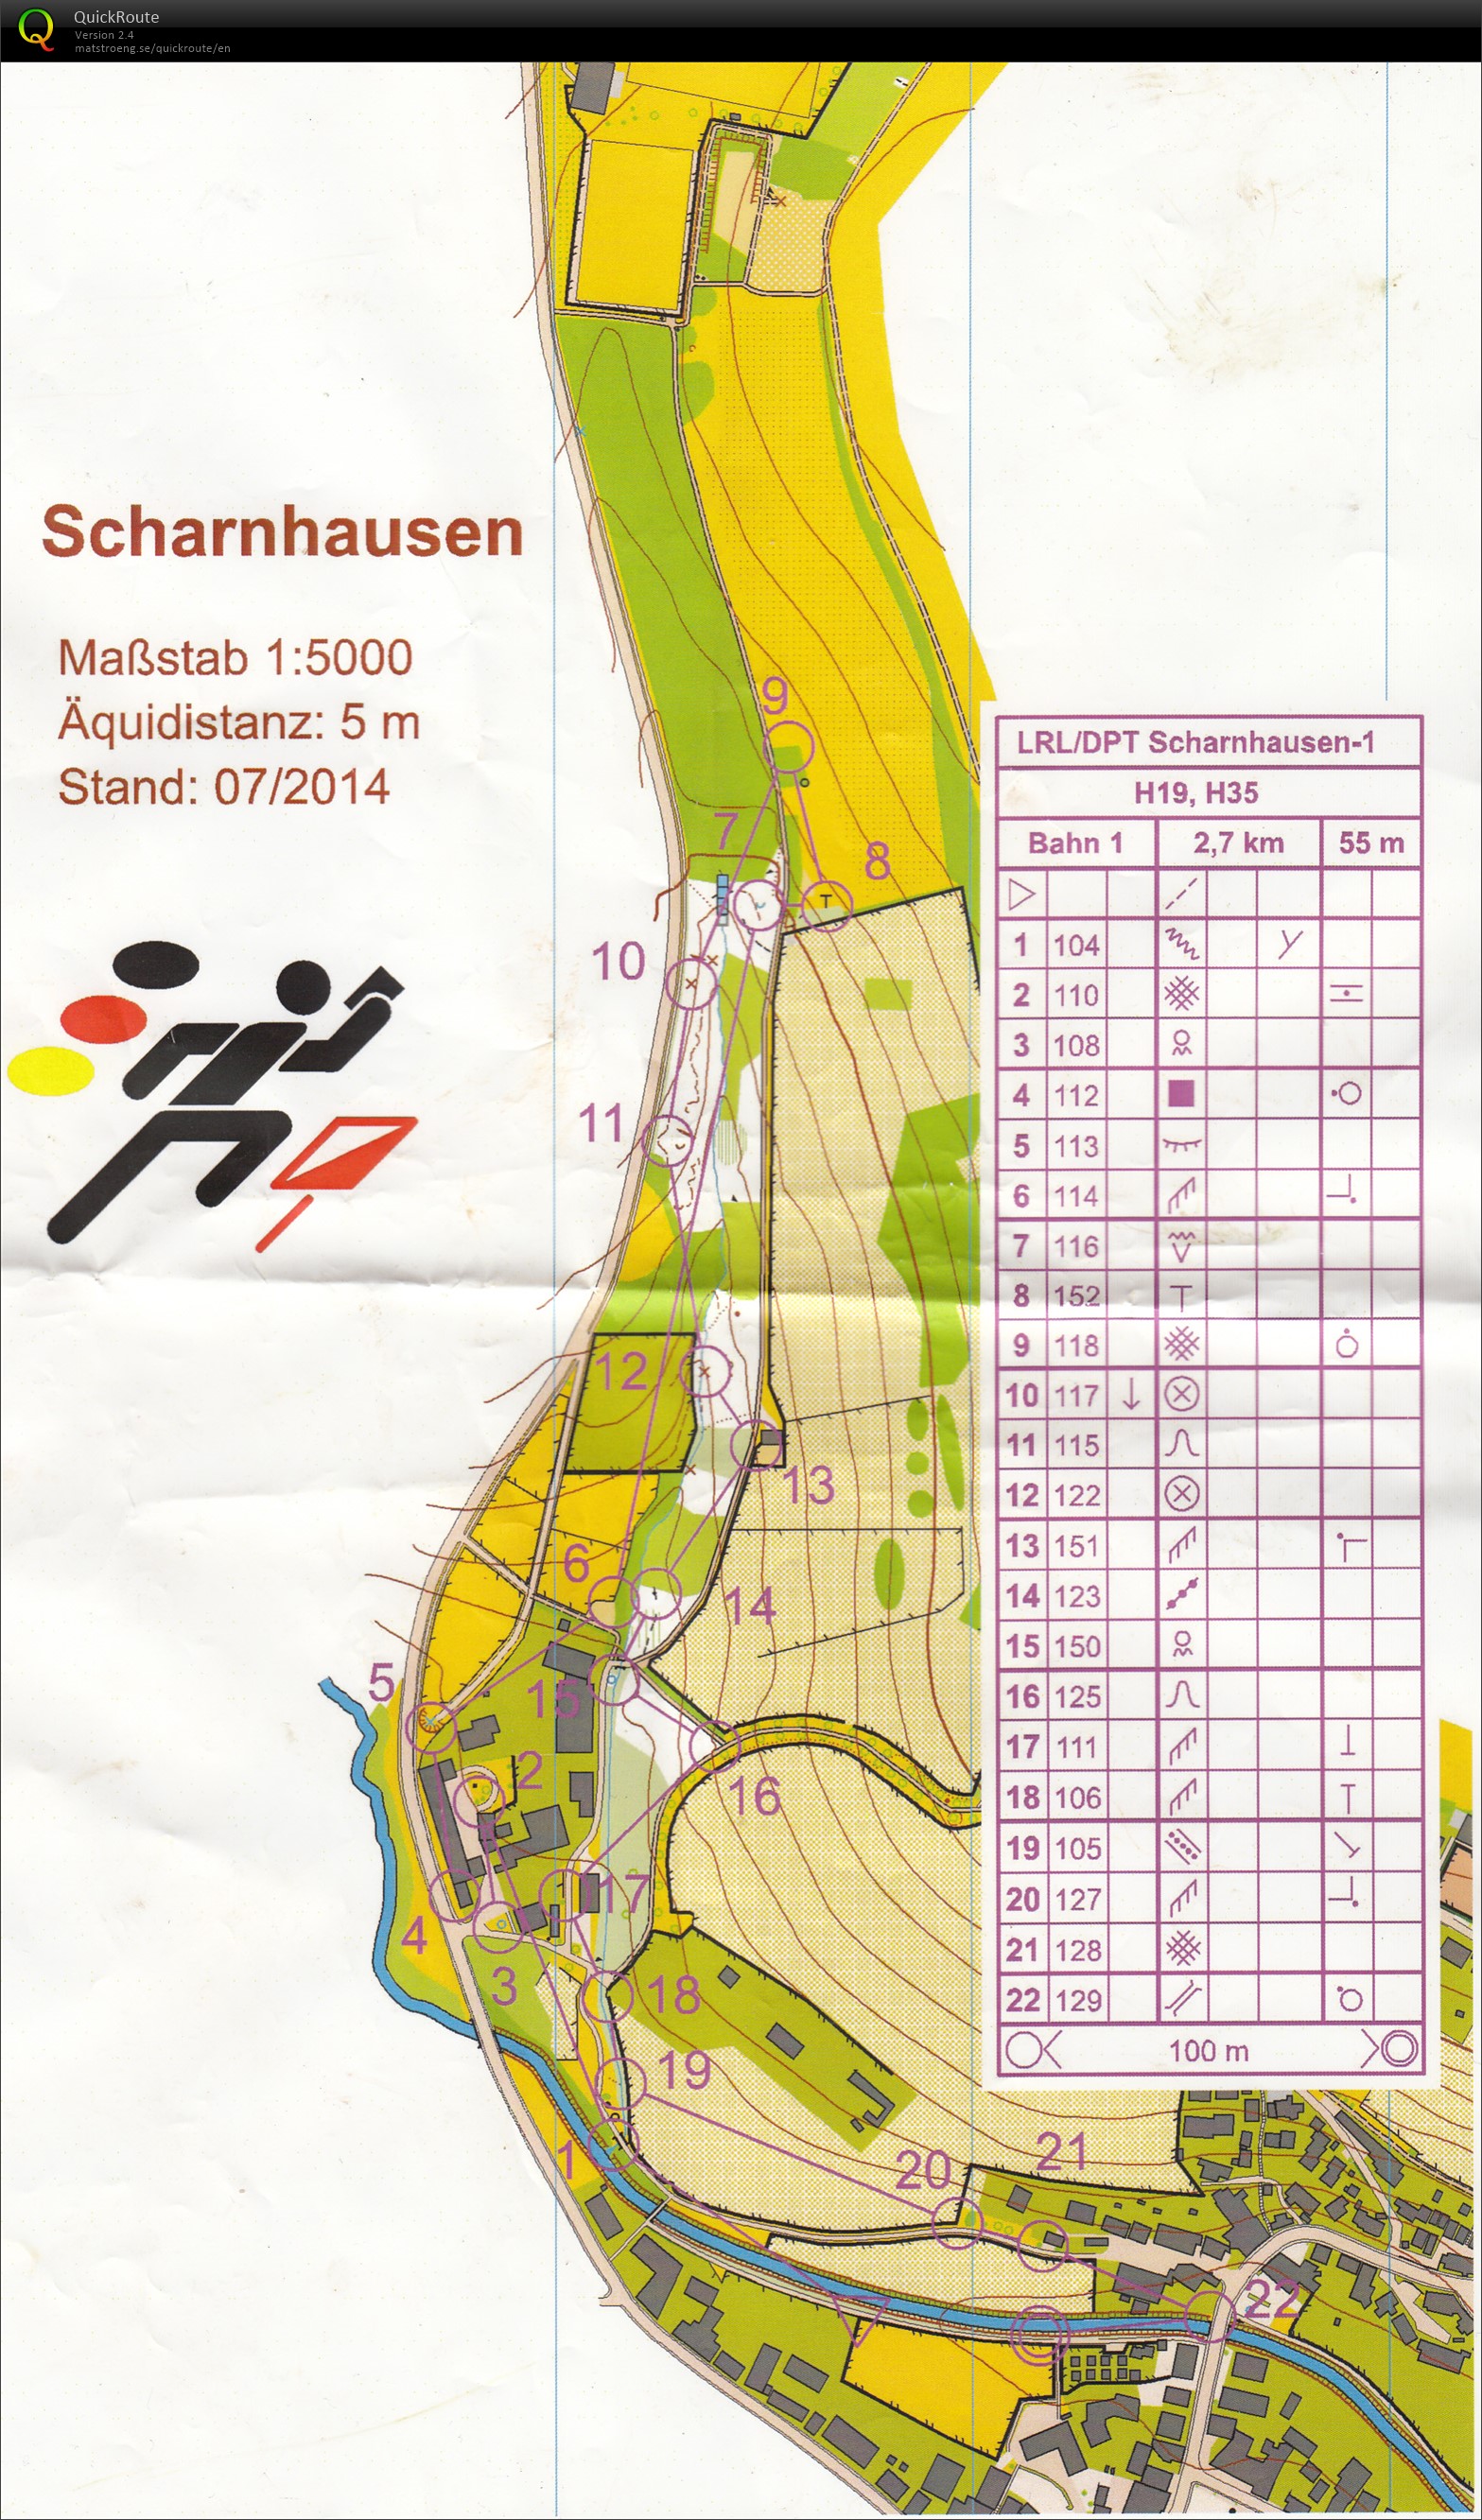 Scharnhausen Sprint 1 (26/07/2014)